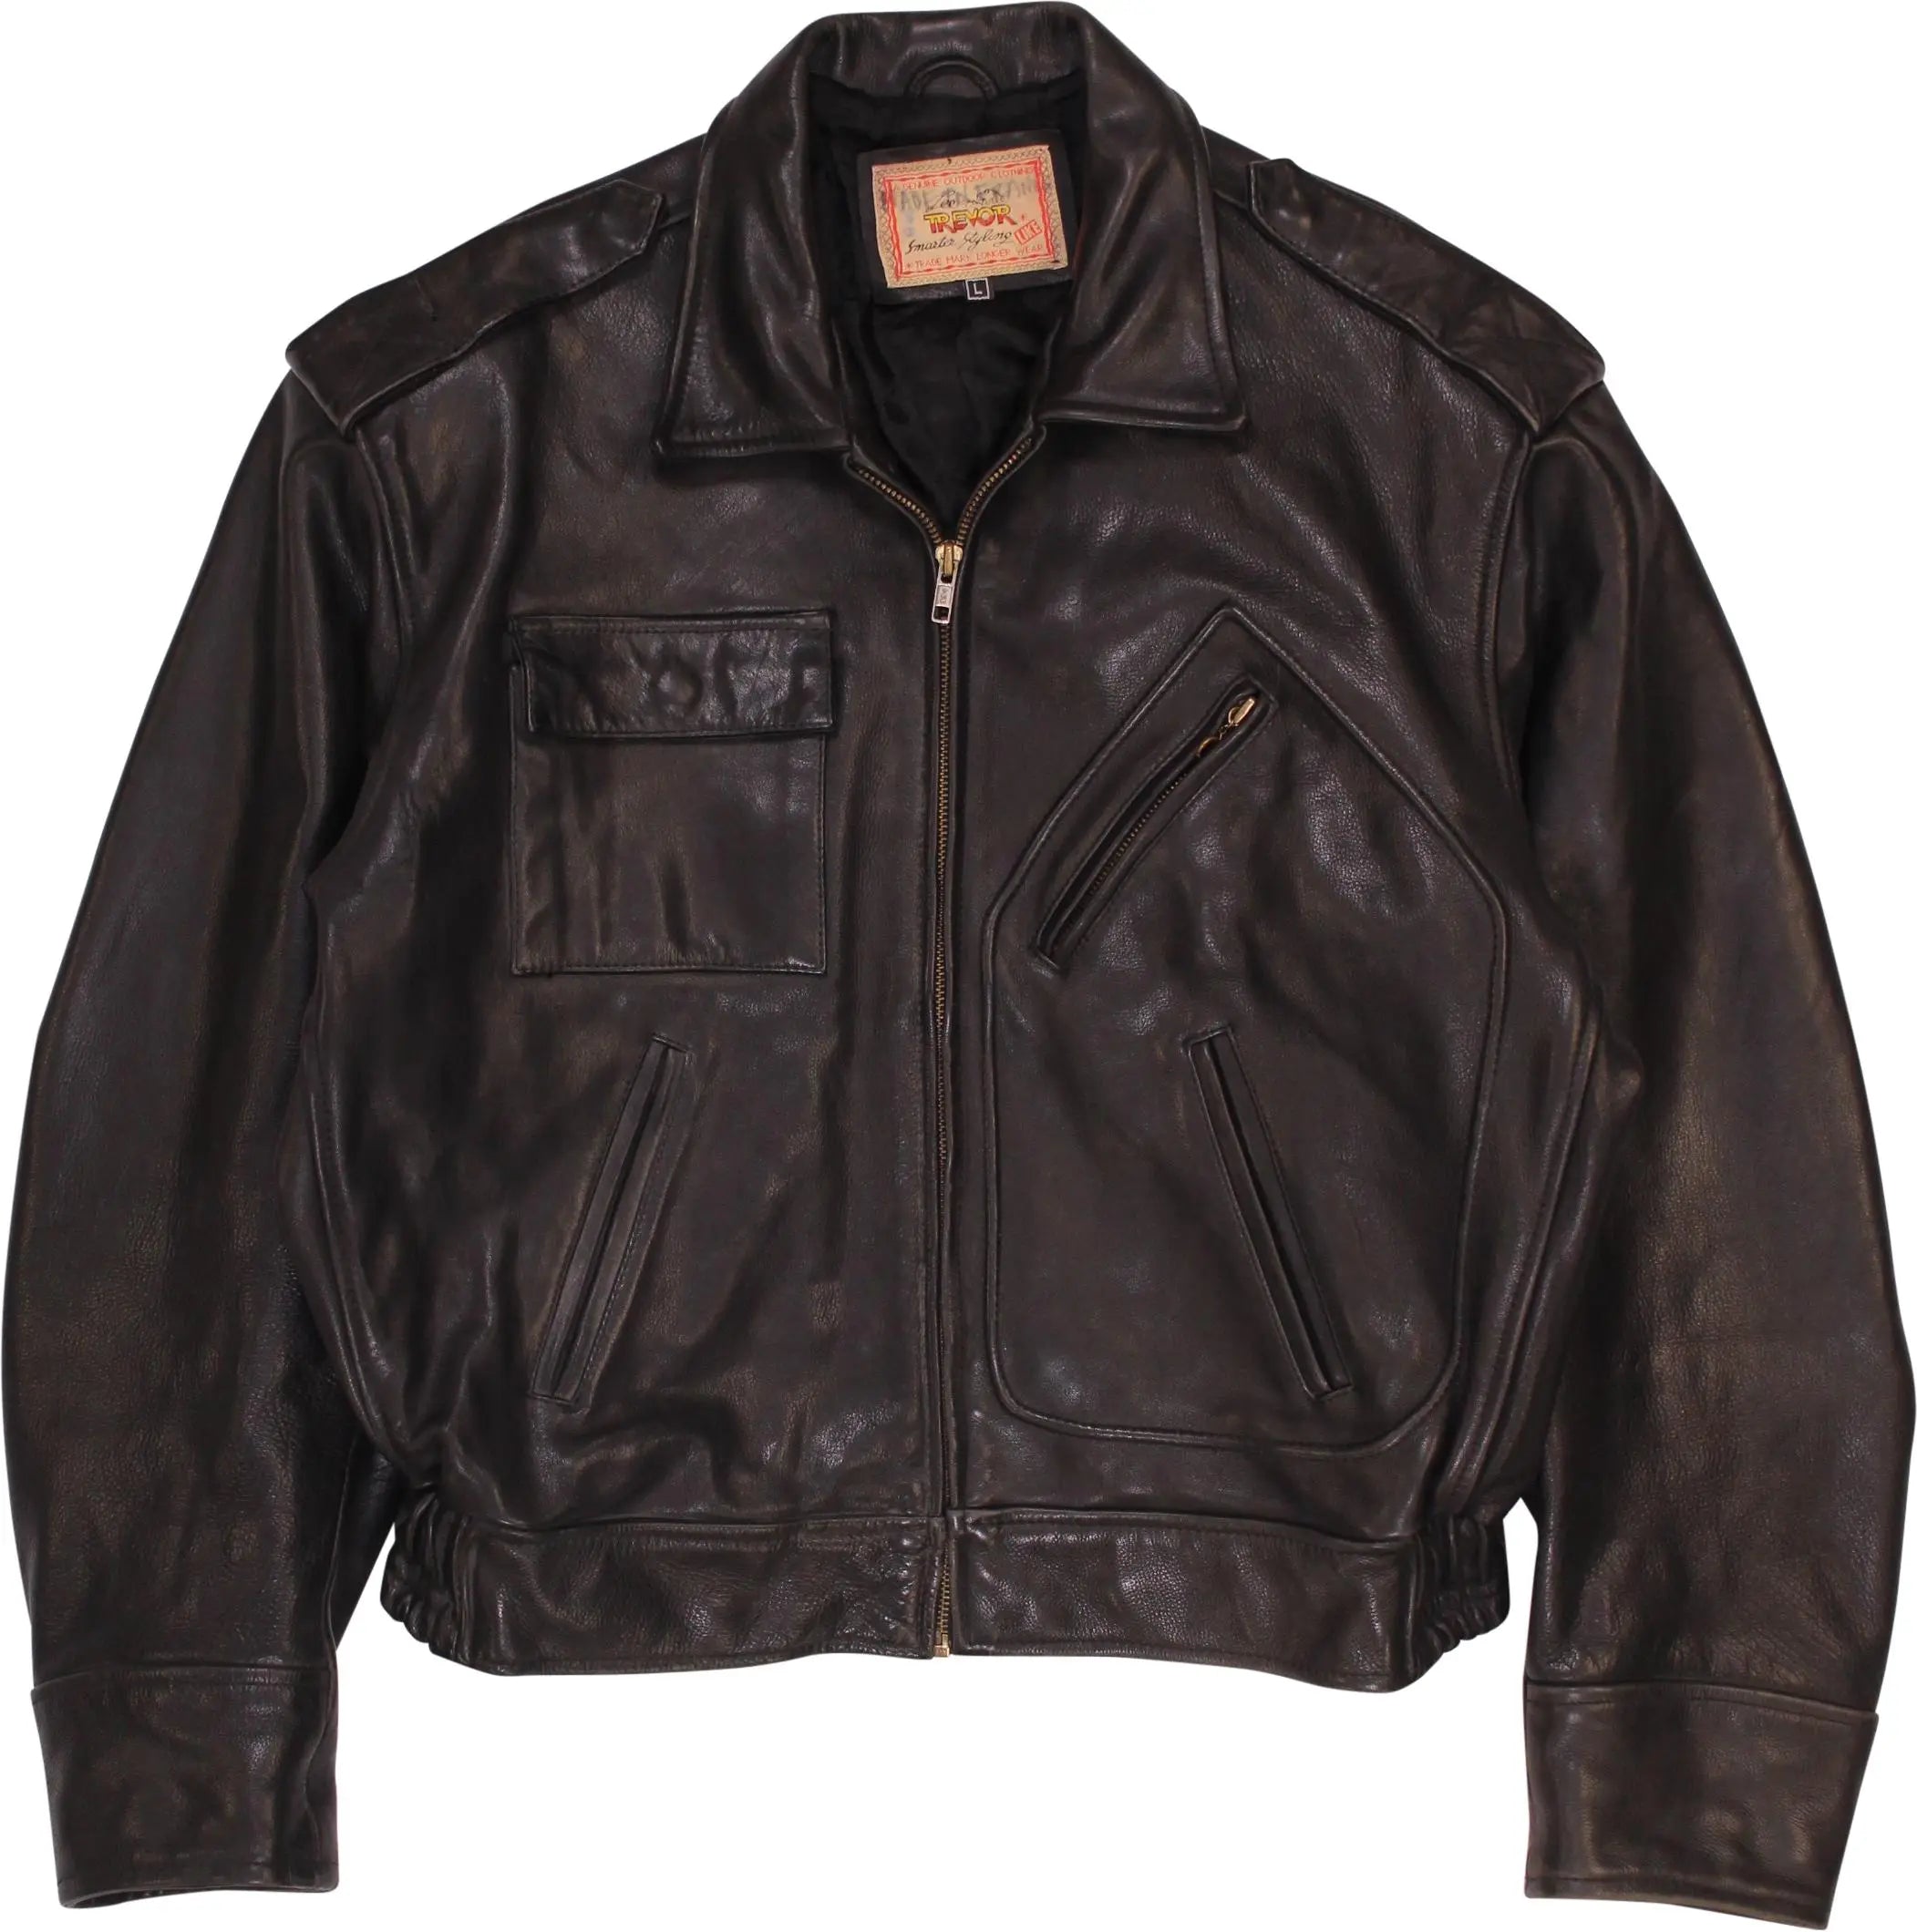 Lee Trevor - Rare 80s/90s Black Leather Jacket by Lee Trevor- ThriftTale.com - Vintage and second handclothing